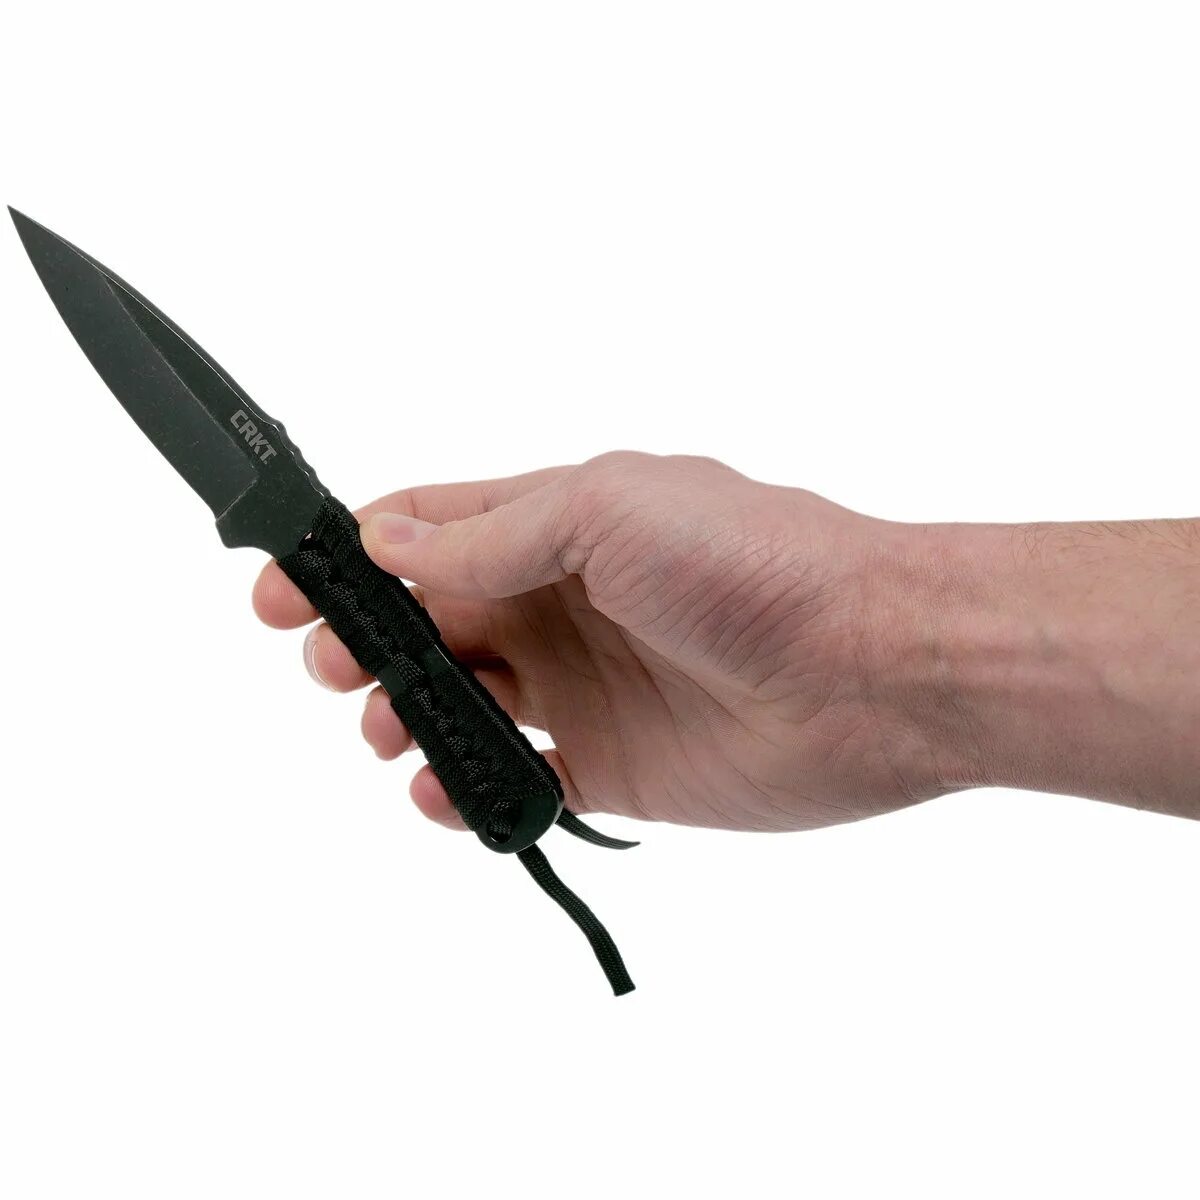 Купить фиксированный нож. Cr3510 CRKT hck1. Нож CRKT Lanny сталь 8cr13mov. Нож CRKT Gulf сталь 8cr13mov, рукоять g10. Нож с фиксированным клинком CRKT Catchall.